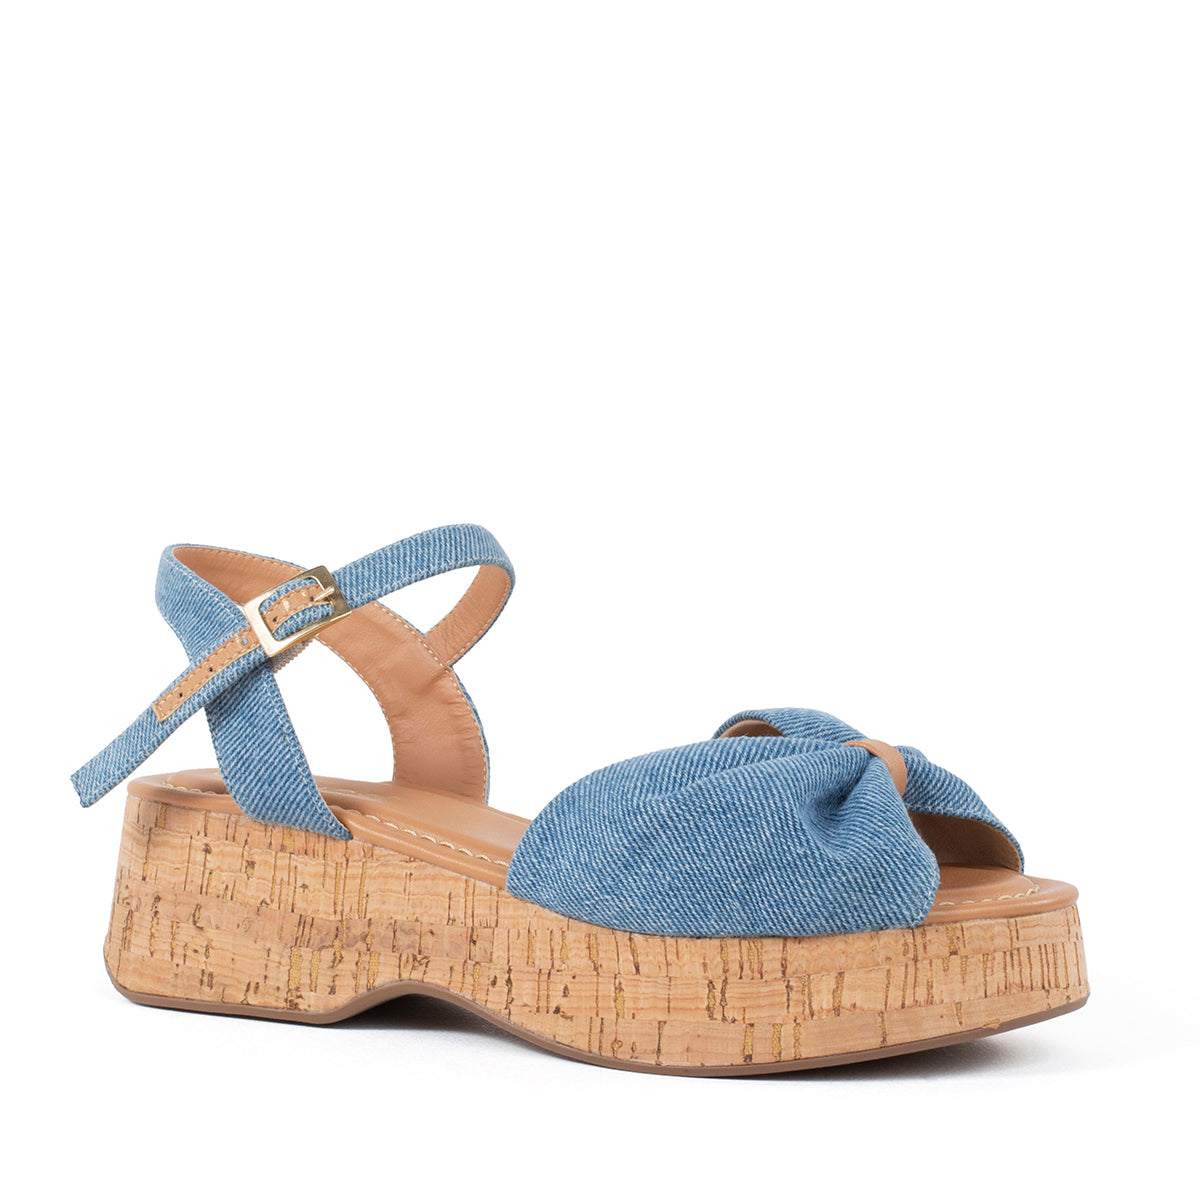 Sandalia color azul denim con correa